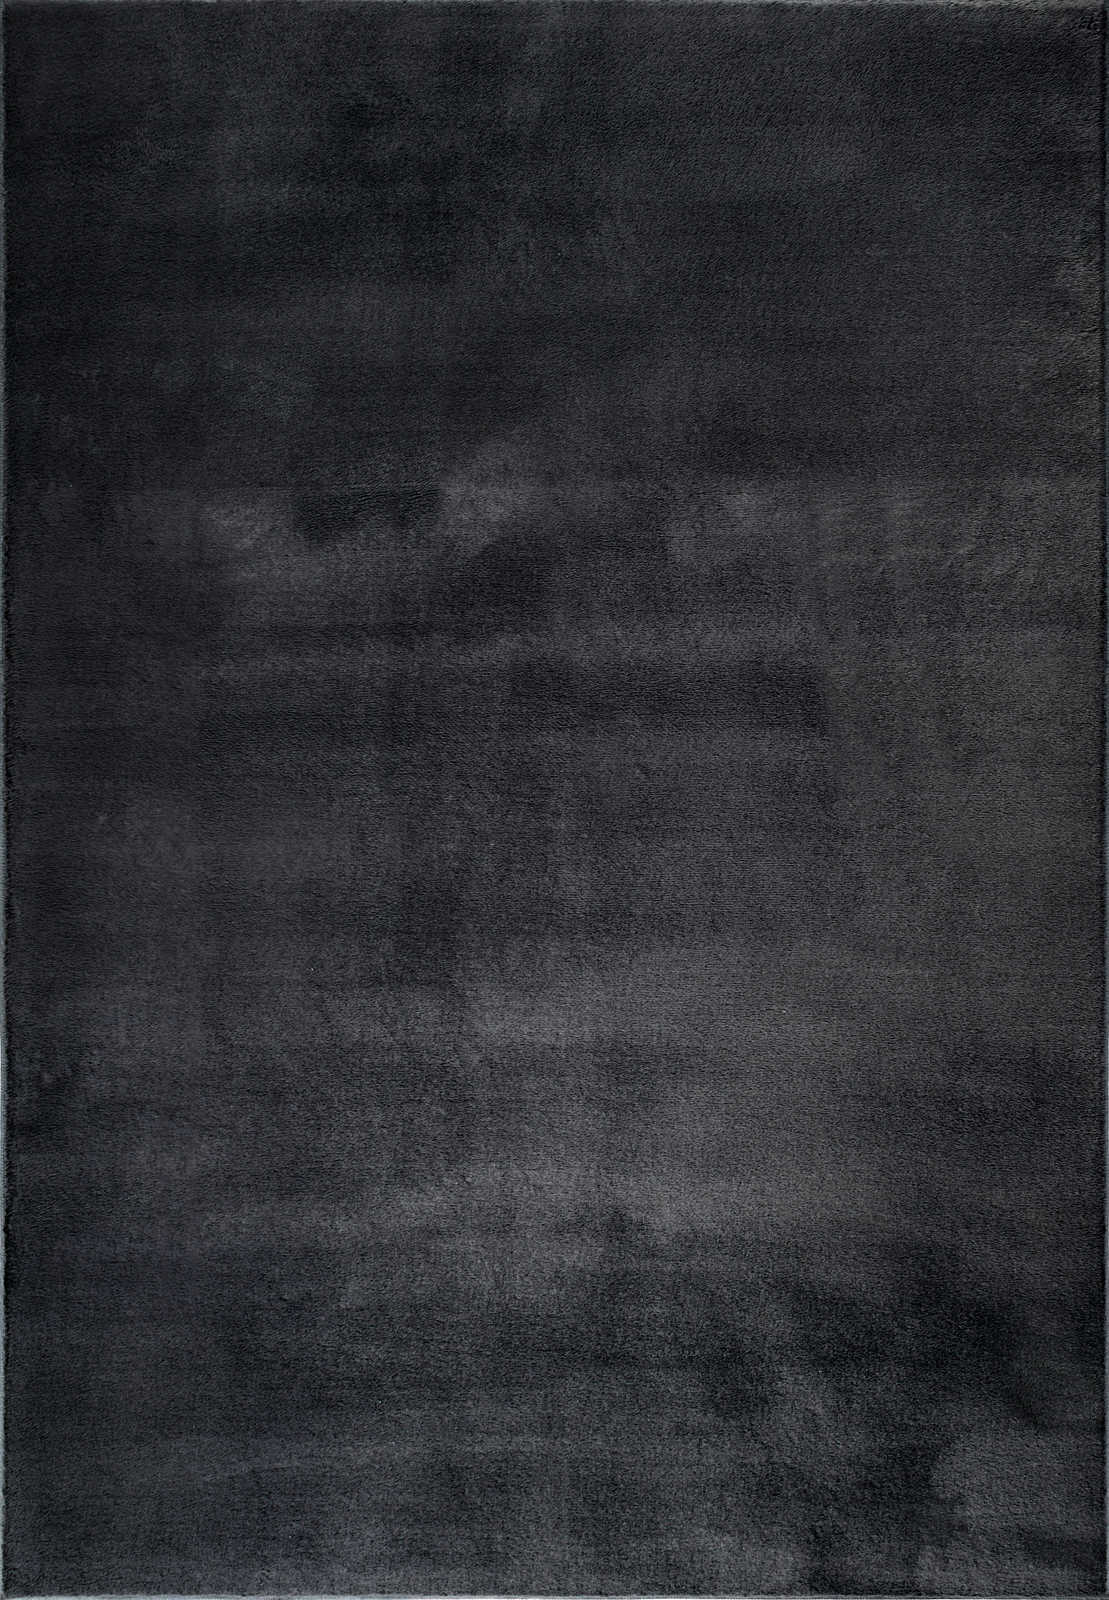             Kuschelweicher Hochflor Teppich in Schwarz – 200 x 140 cm
        